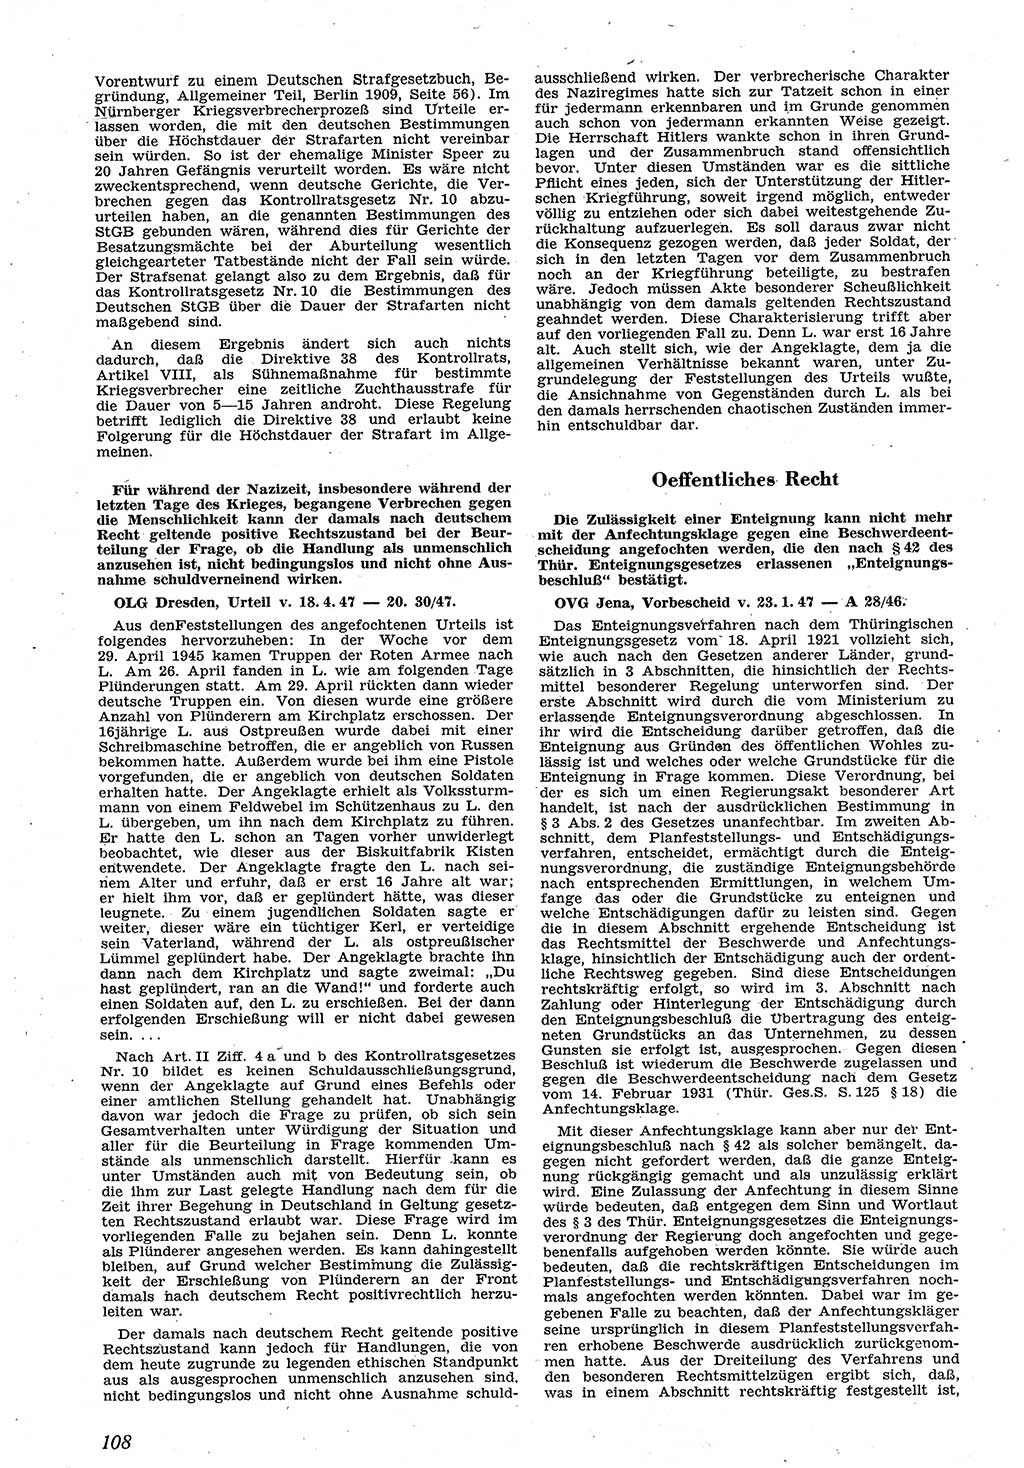 Neue Justiz (NJ), Zeitschrift für Recht und Rechtswissenschaft [Sowjetische Besatzungszone (SBZ) Deutschland], 1. Jahrgang 1947, Seite 108 (NJ SBZ Dtl. 1947, S. 108)